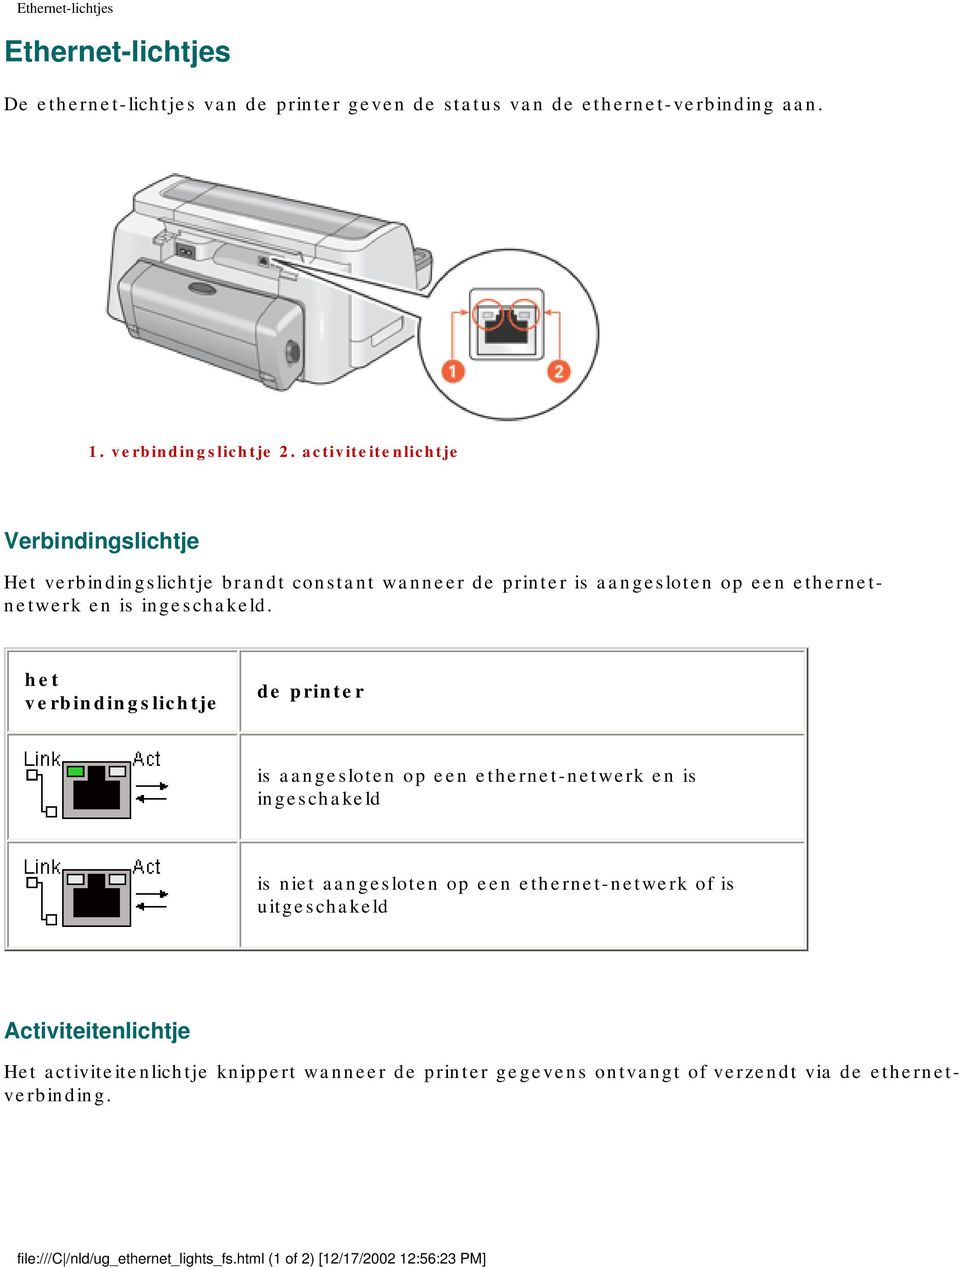 het verbindingslichtje de printer is aangesloten op een ethernet-netwerk en is ingeschakeld is niet aangesloten op een ethernet-netwerk of is uitgeschakeld